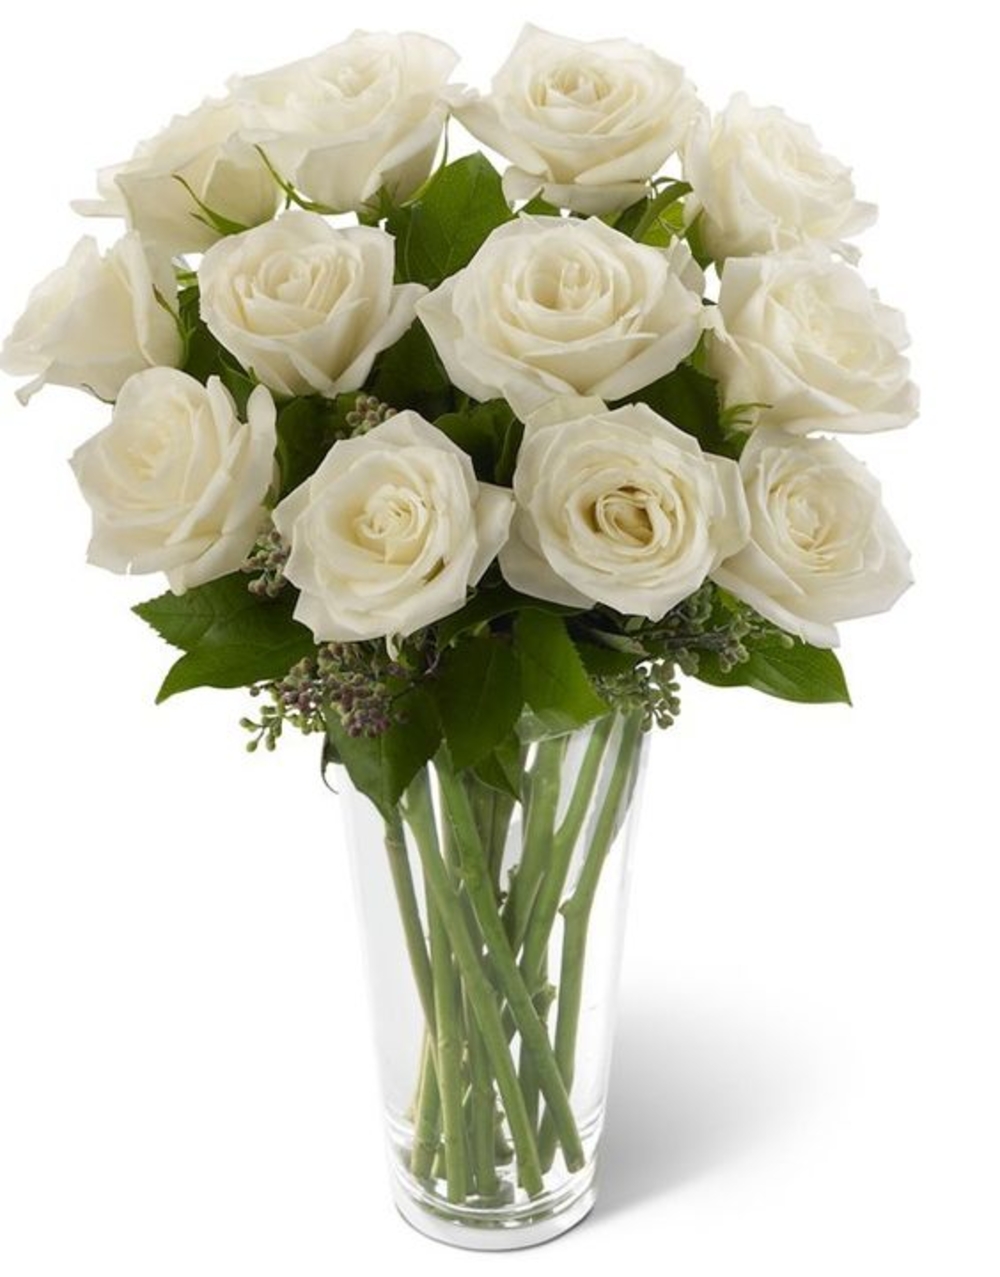 12 White Roses Flower Vase